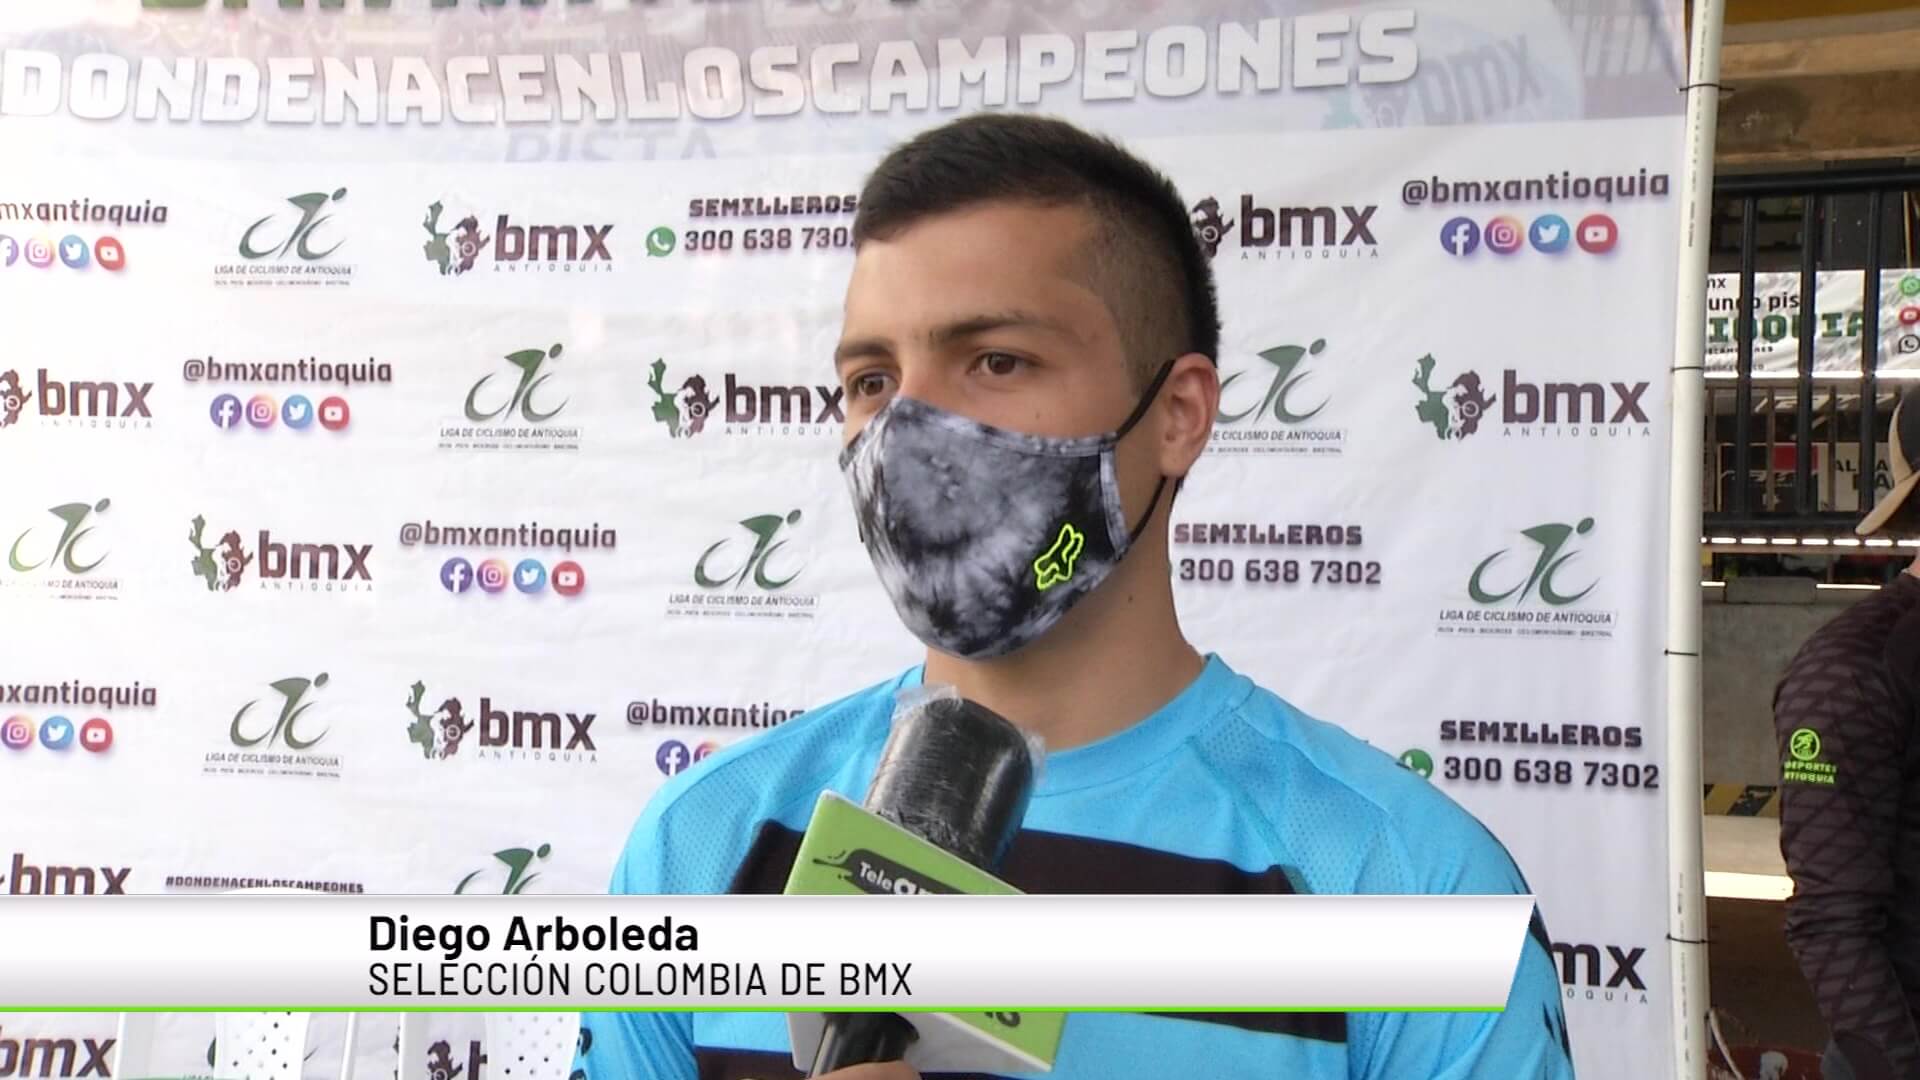 Diego Arboleda regresa a la selección de BMX